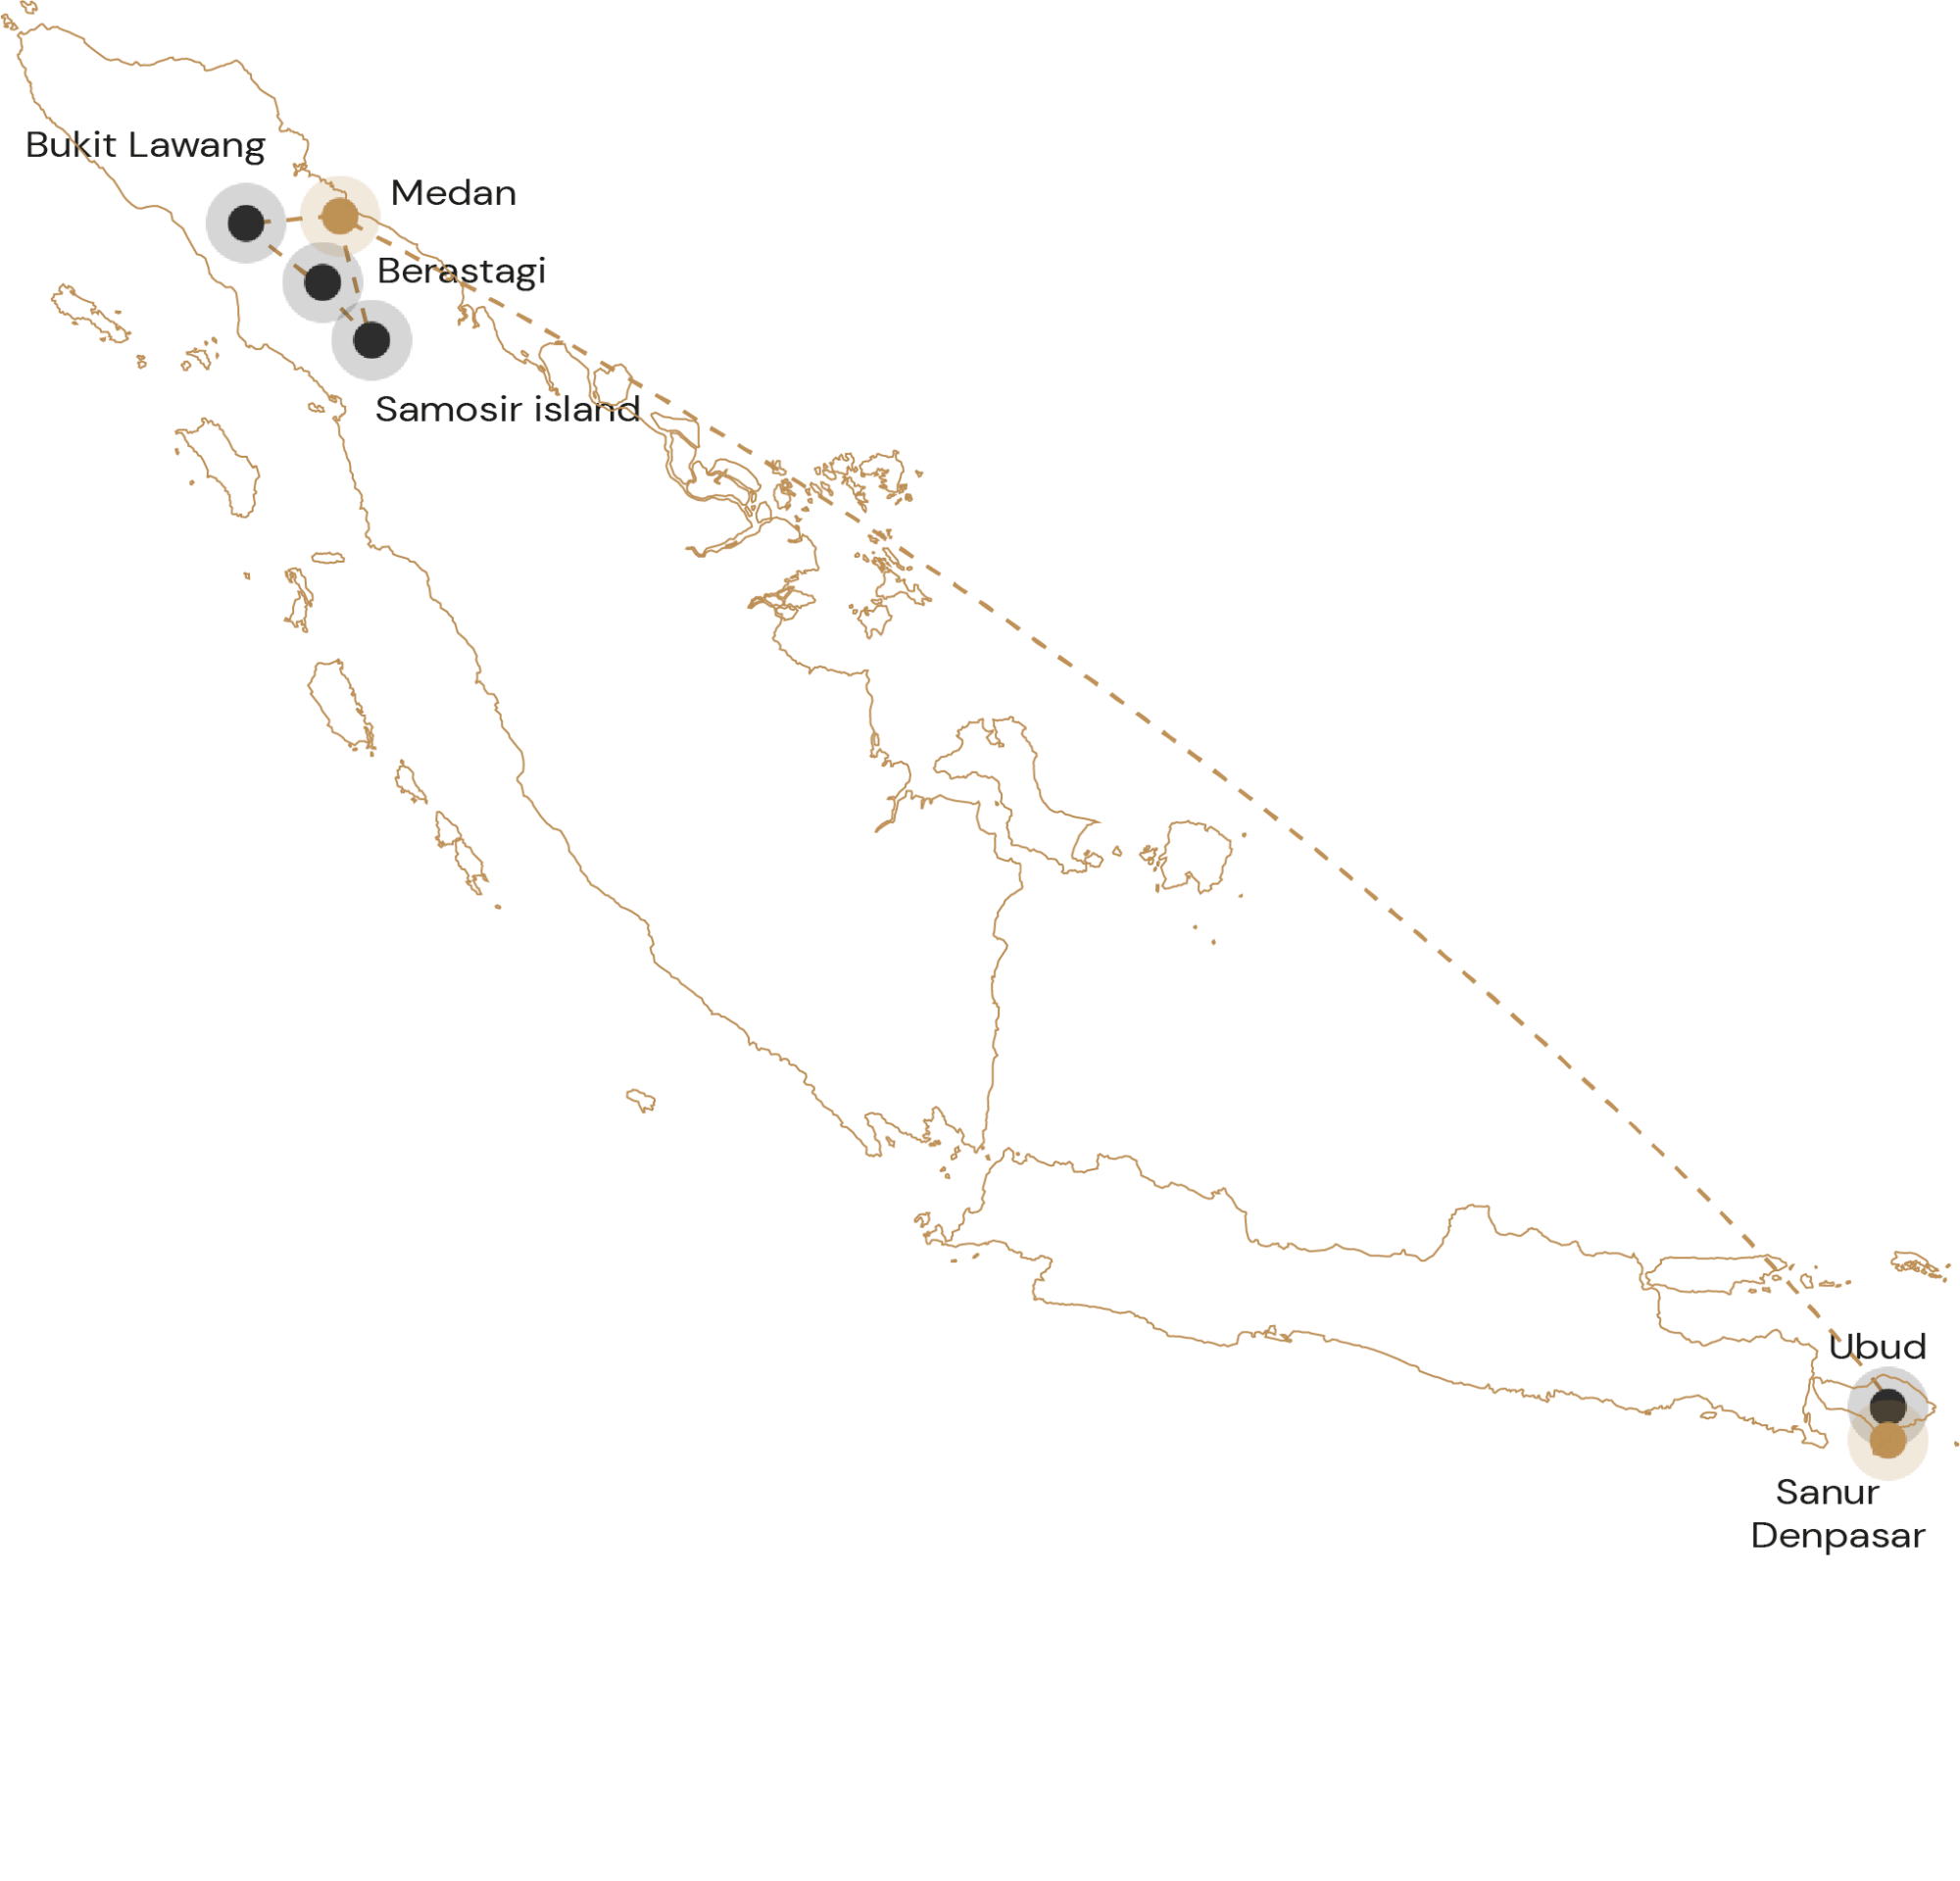 Kaartje rondreis avontuurlijk Sumatra en ontspannen Bali